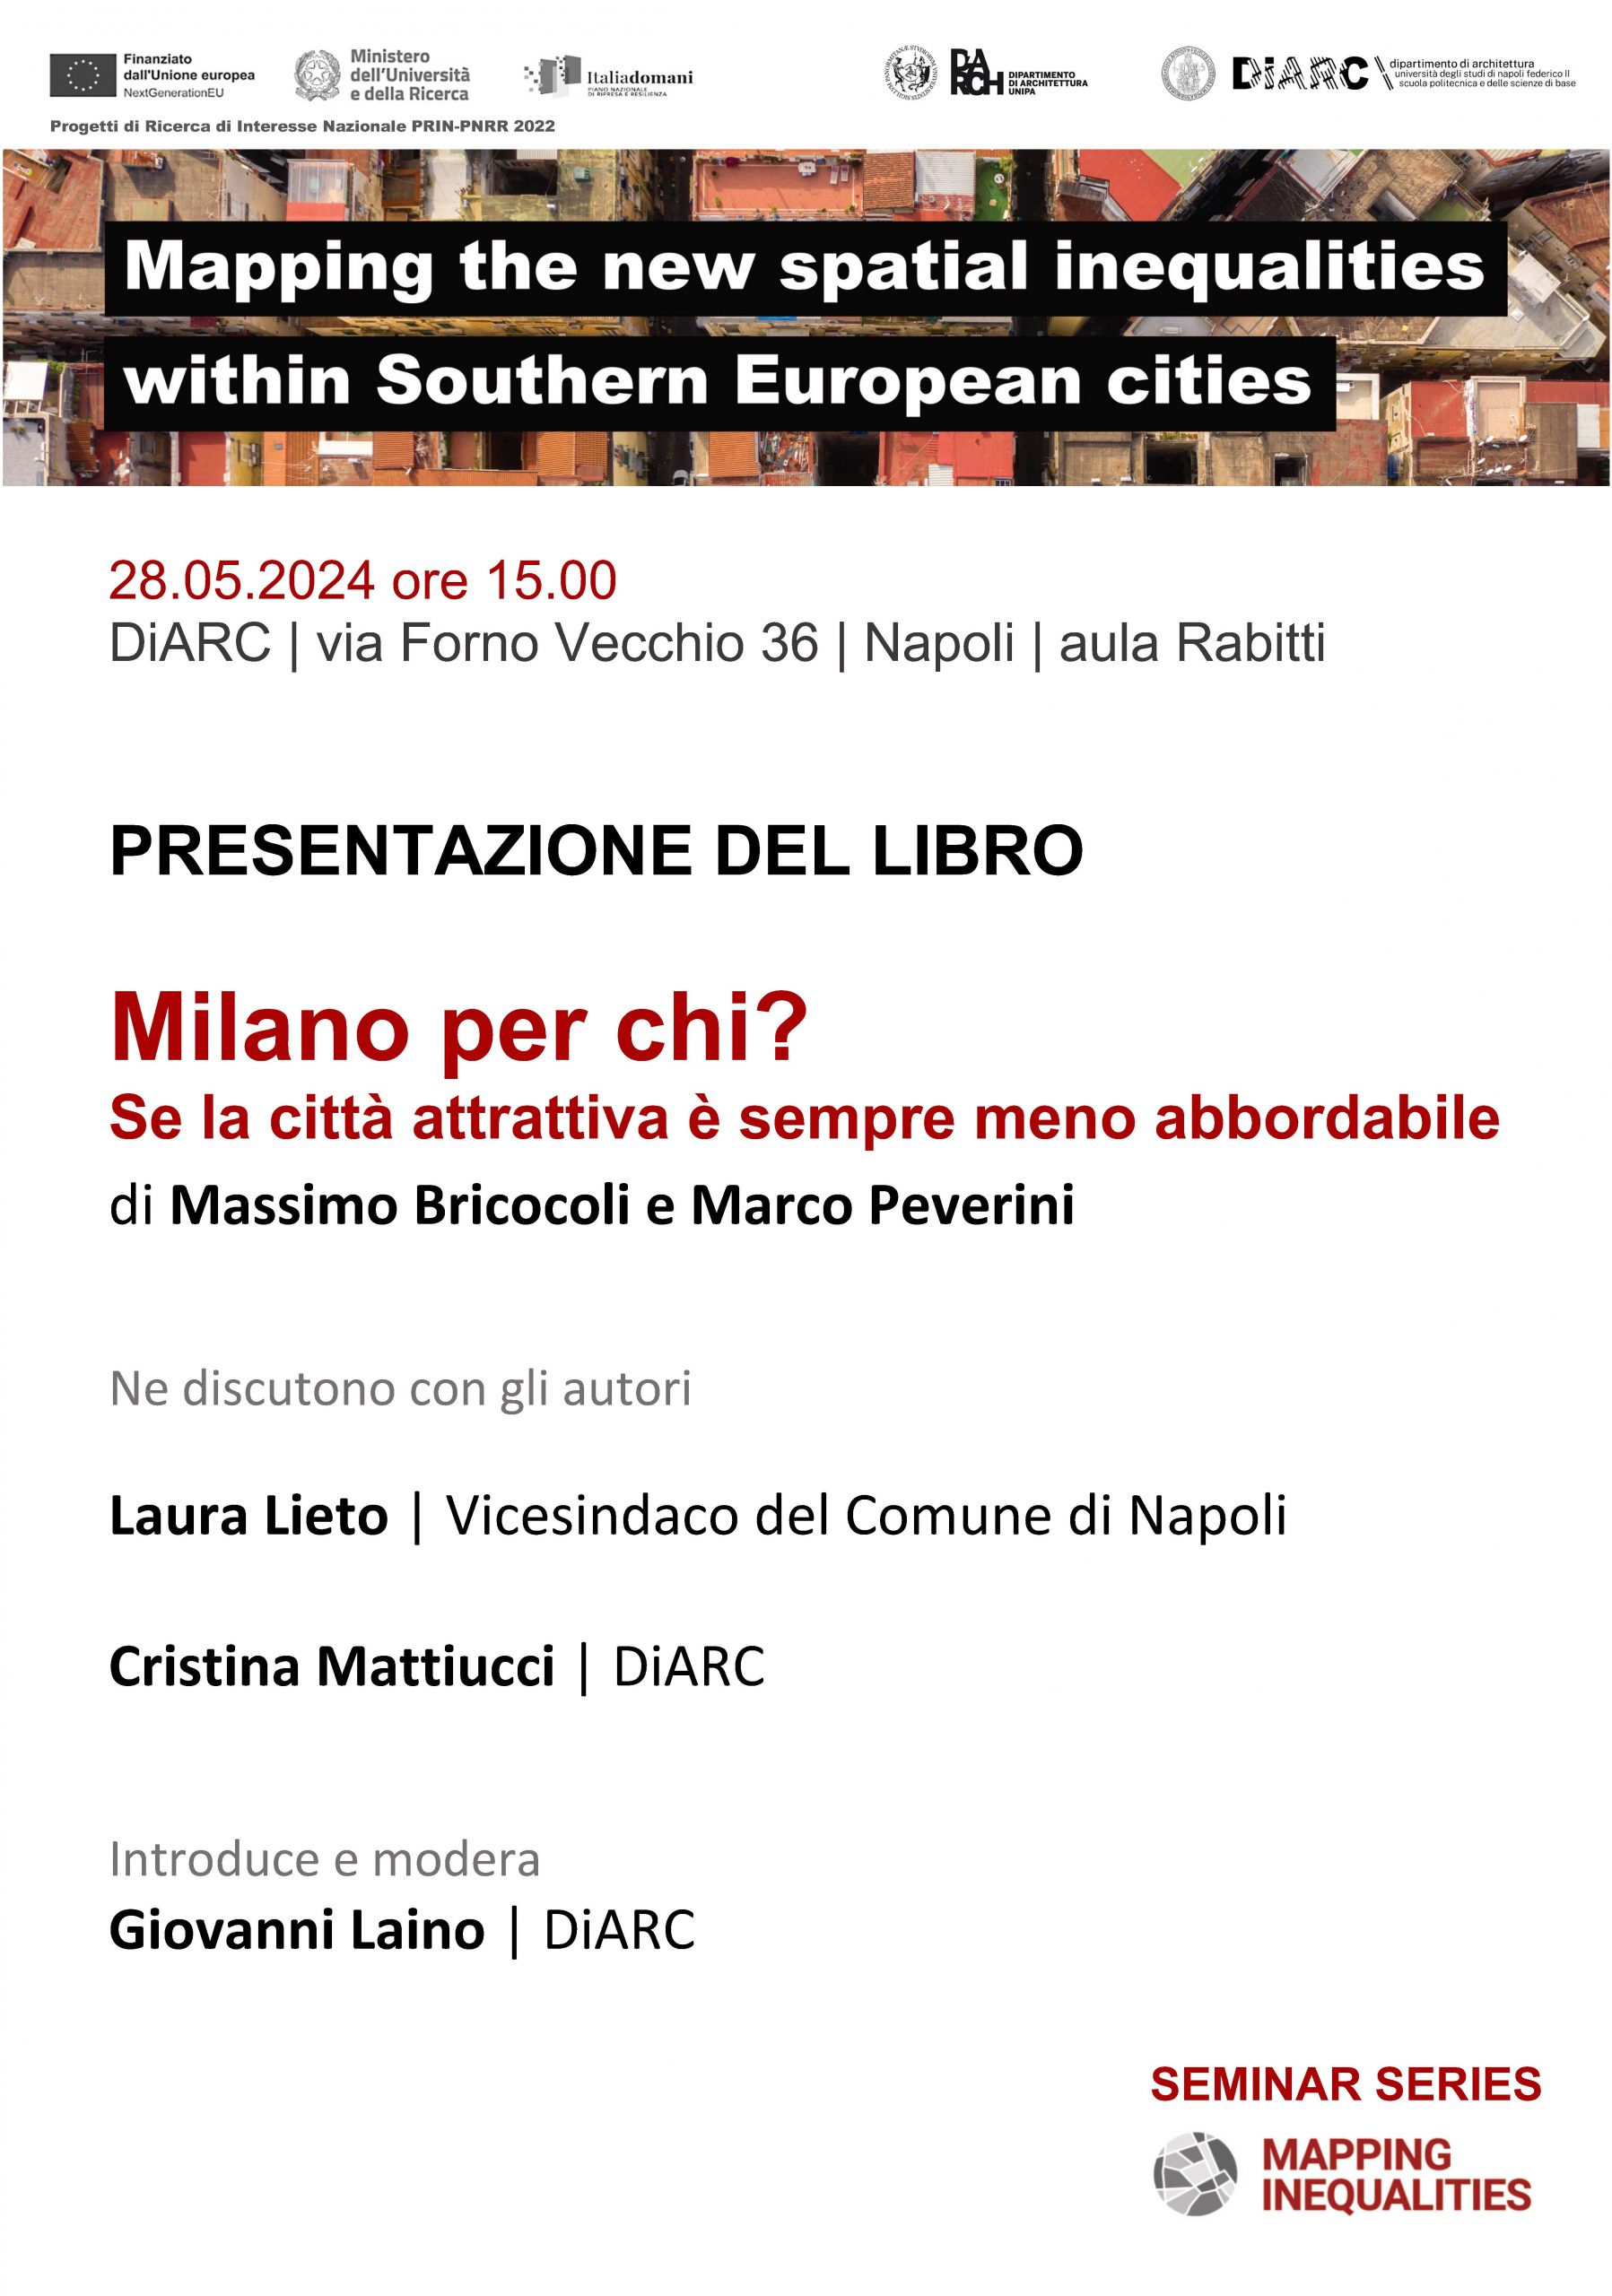 Presentazione del libro “Milano per chi?” al DiARC, Dipartimento di Architettura dell’Università degli Studi di Napoli Federico II (28 maggio, h15.00)